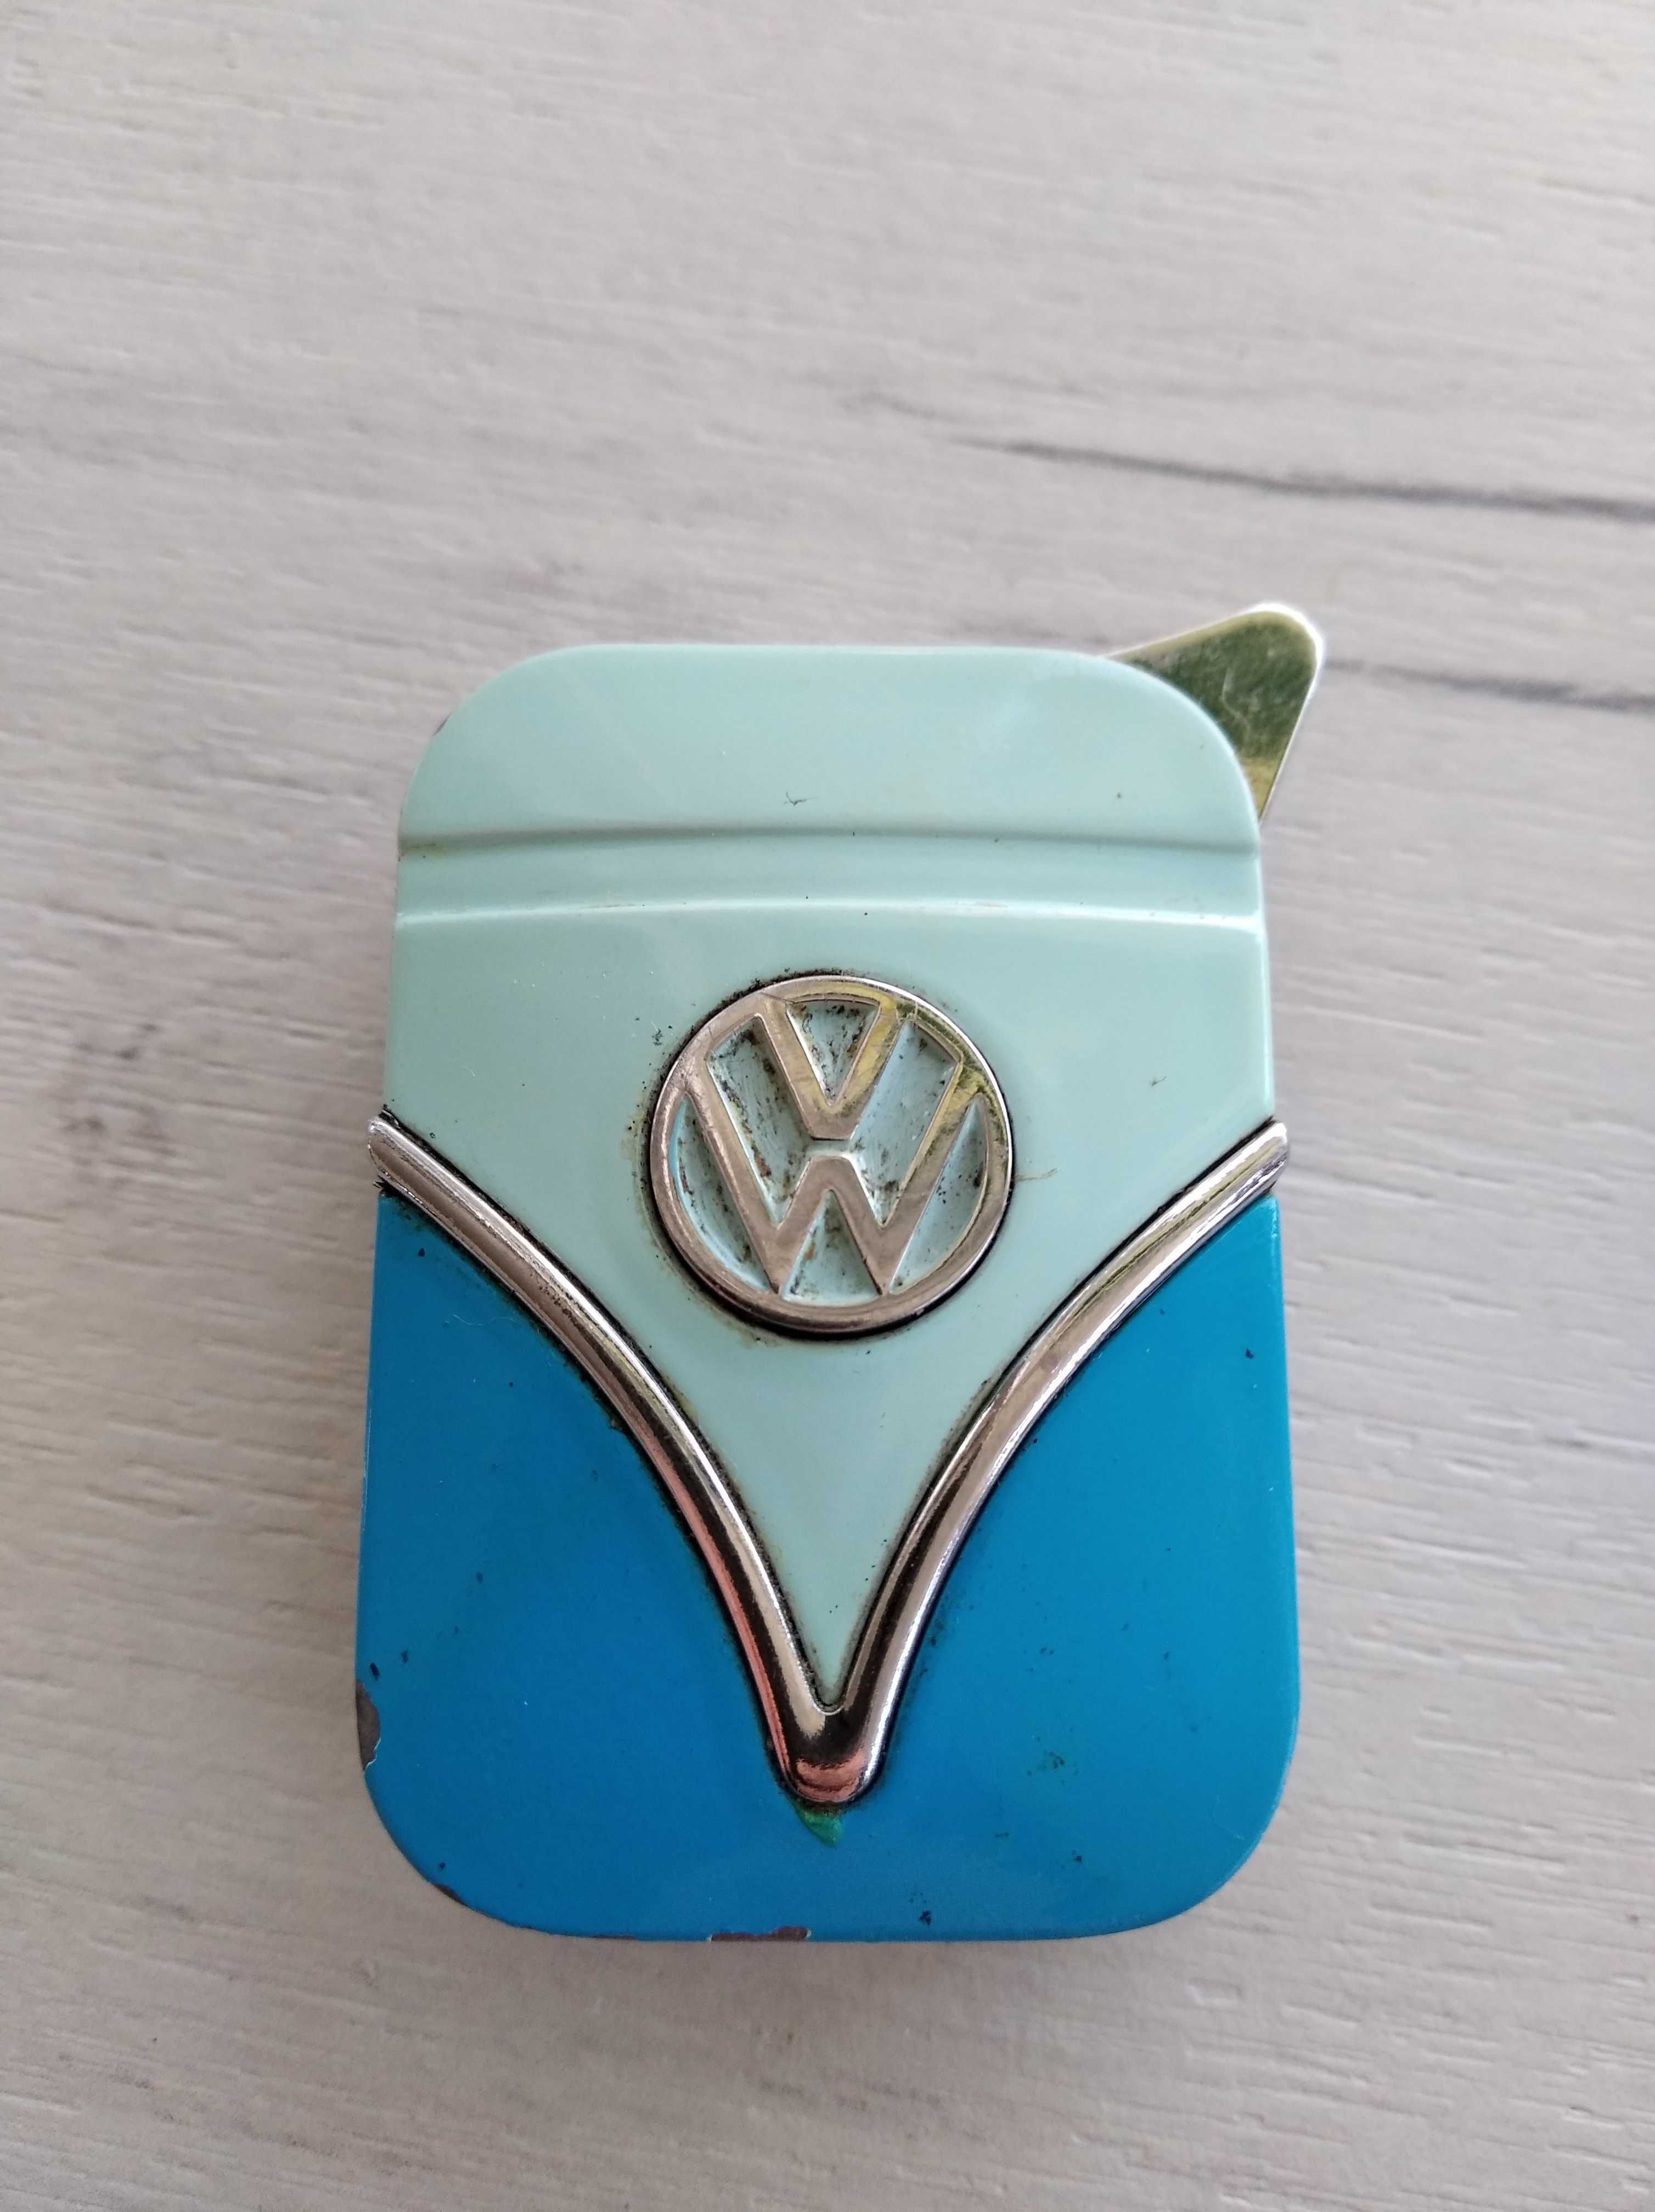 метална запалка VW